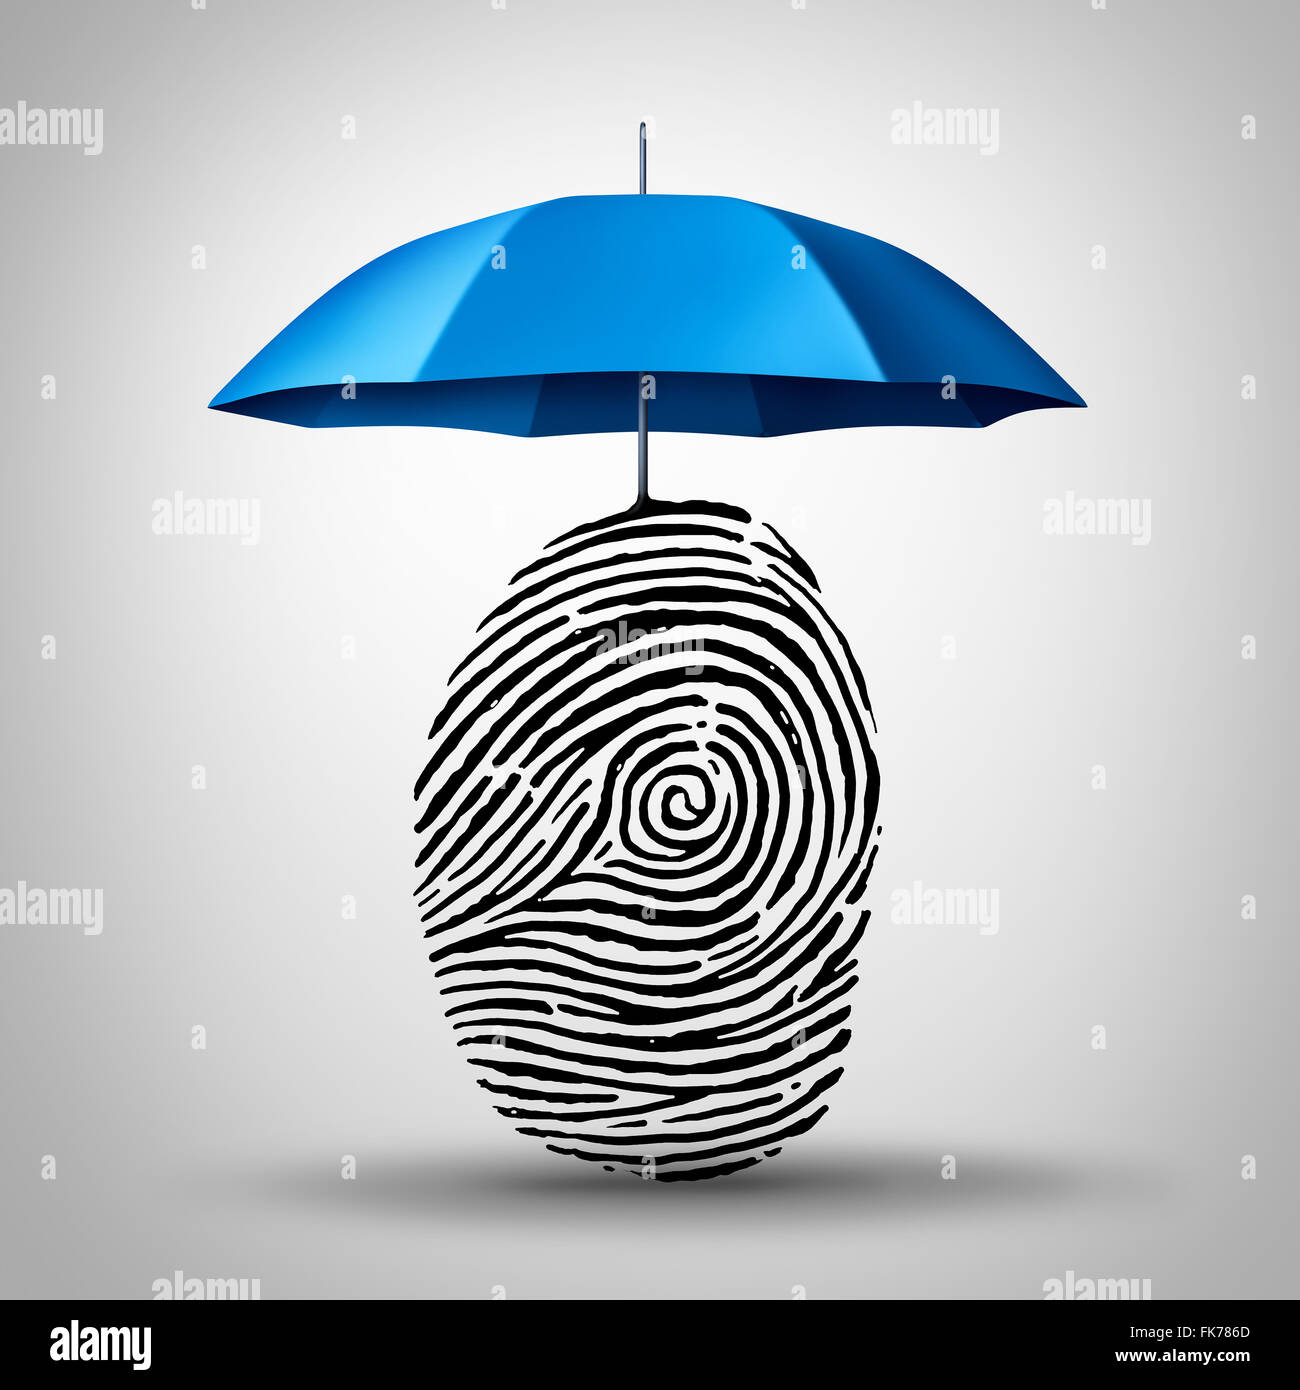 Identifikation und ID betrug Sicherheit wie ein Regenschirm, eine Fingerabdruck oder Finger print-Symbol als eine Identität Symbol und Verbraucher Informationen Wachmann zu schützen. Stockfoto